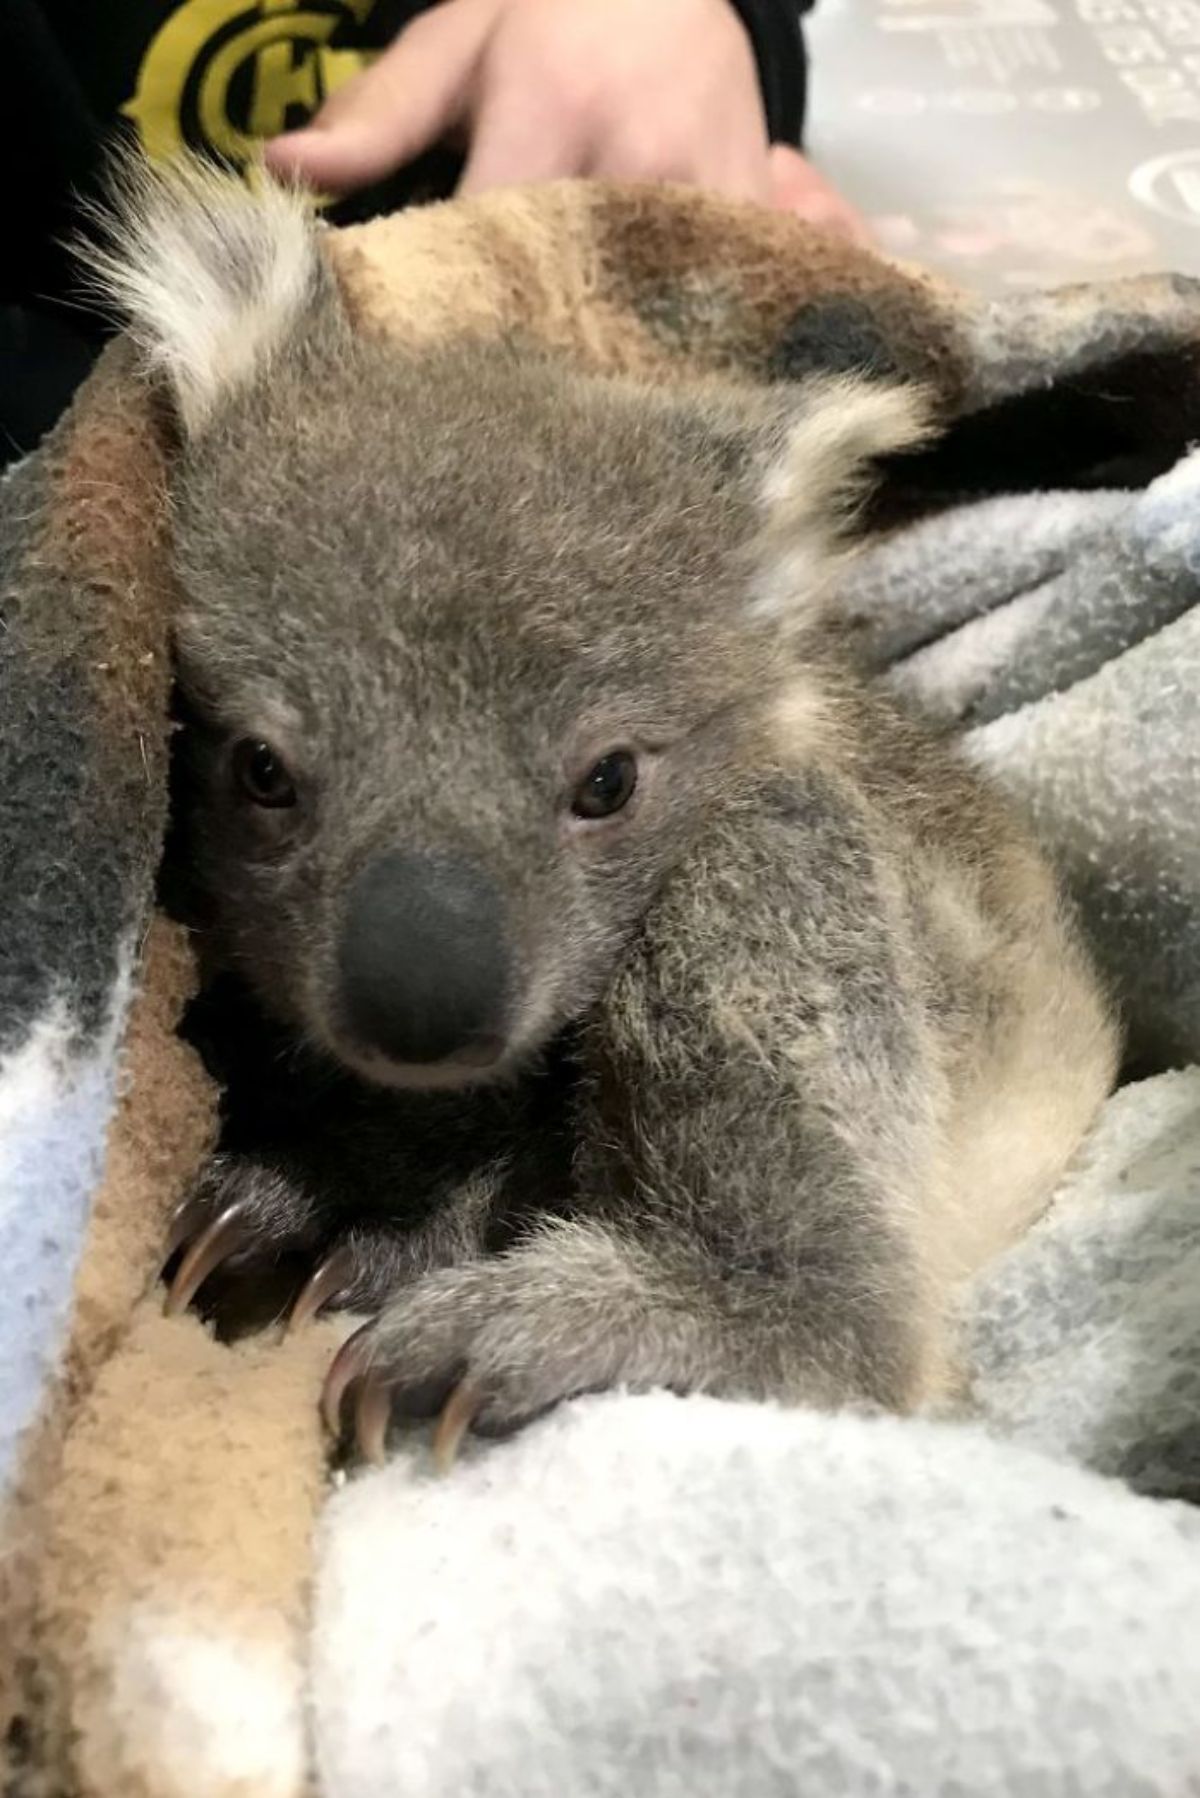 koala cuddled up in a blanket